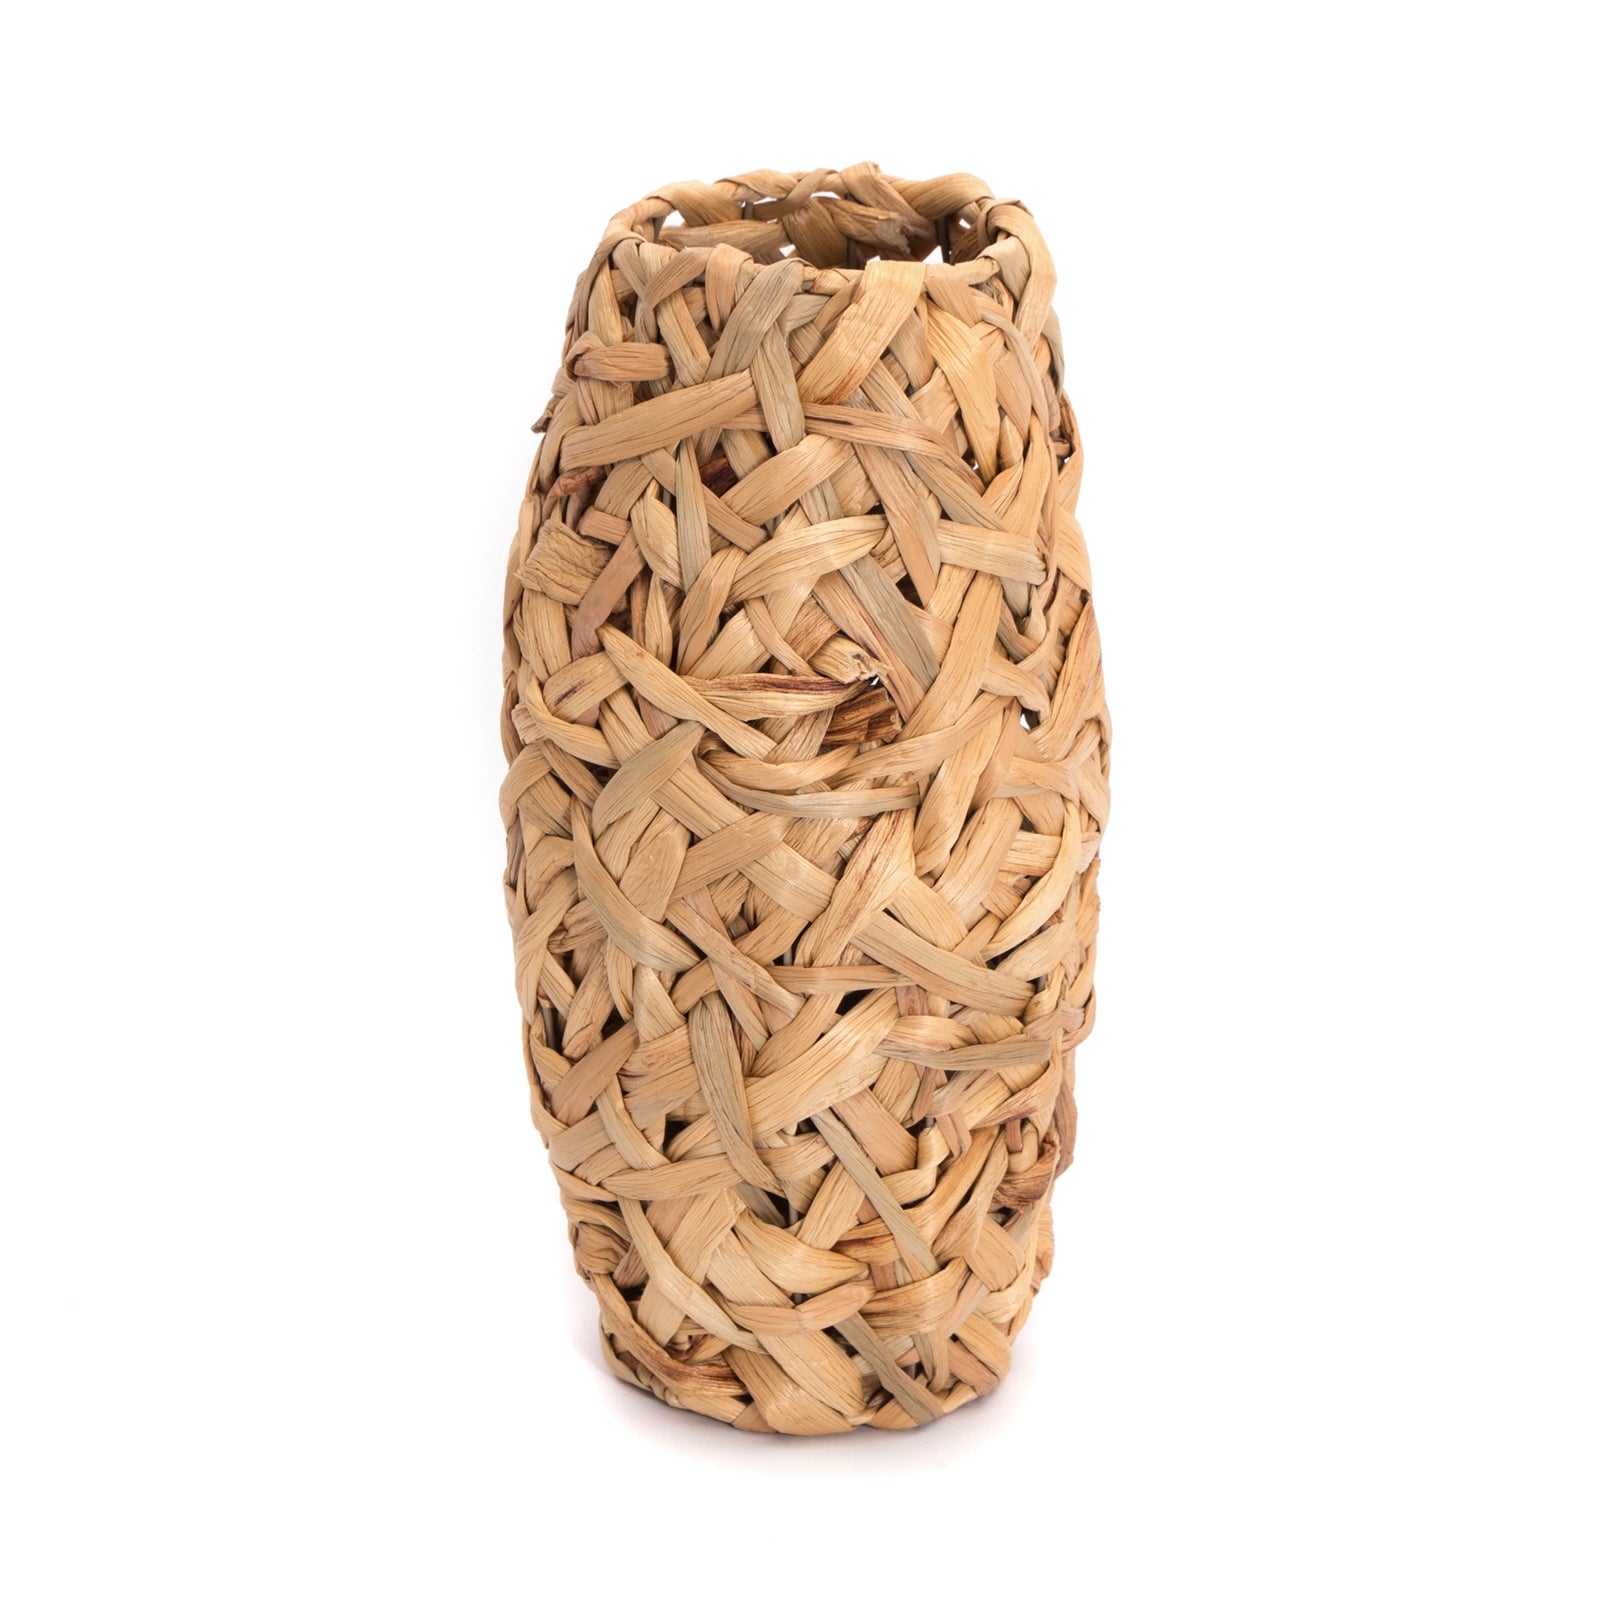 NATUR BODEN VASE "CALIDA" | 40 cm, Wasserhyazinthe | Geflochtene Vase